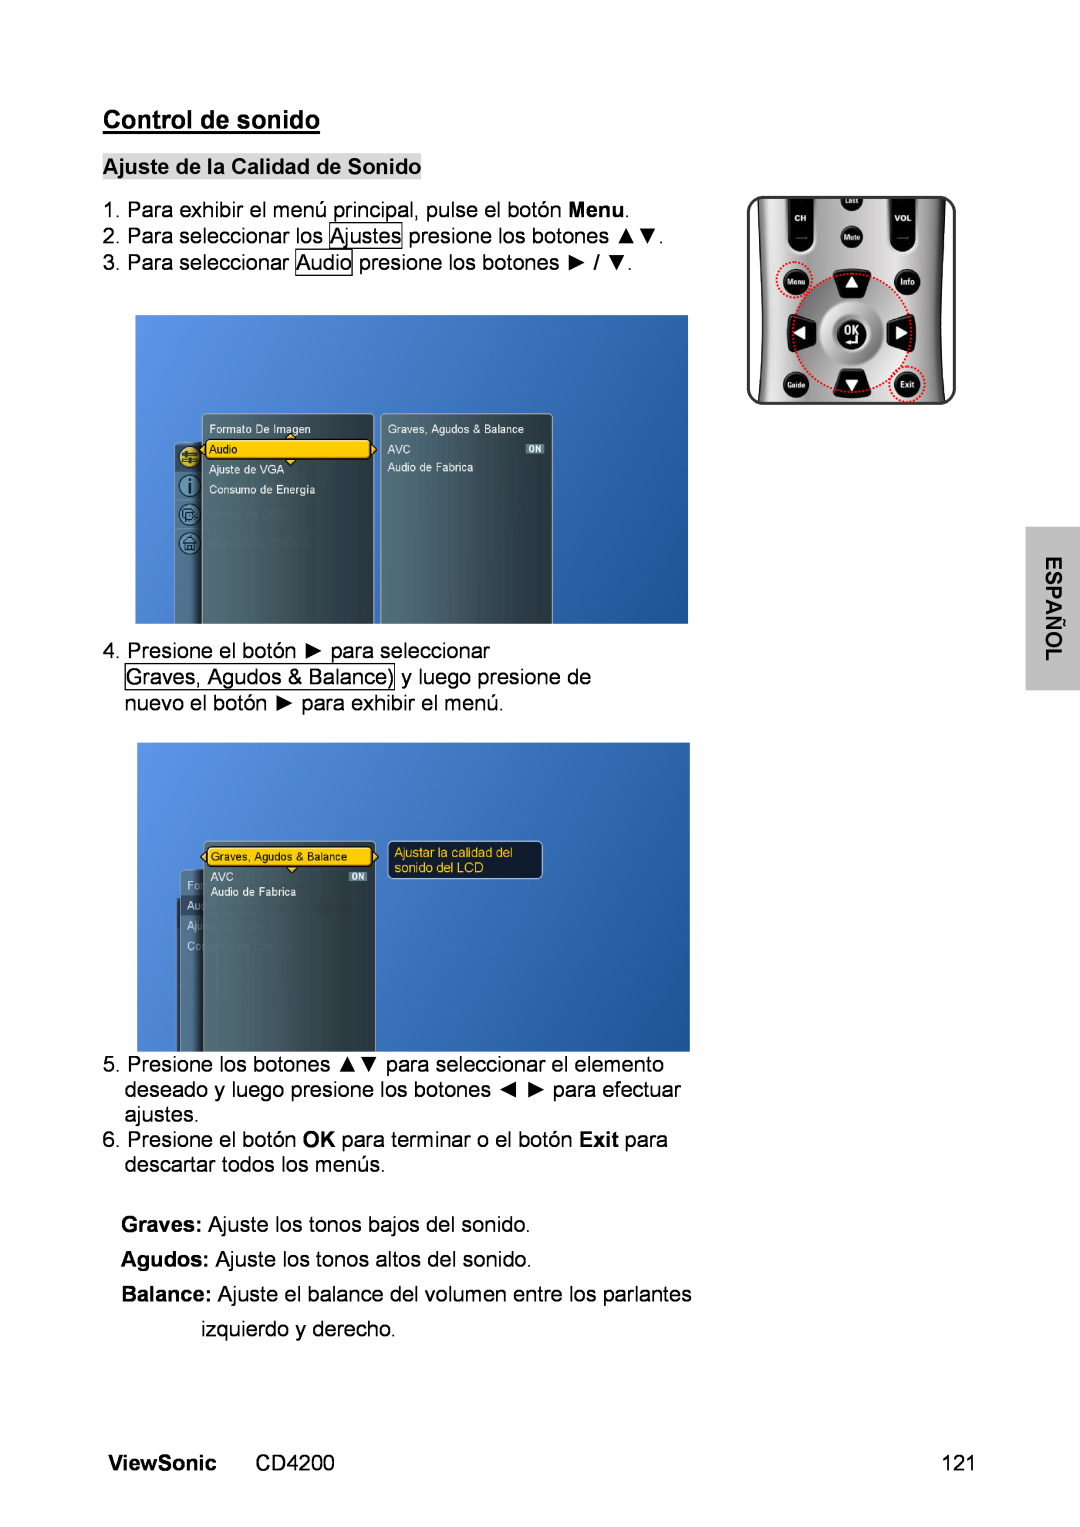 ViewSonic manual Control de sonido, Ajuste de la Calidad de Sonido, ViewSonic CD4200, Español 